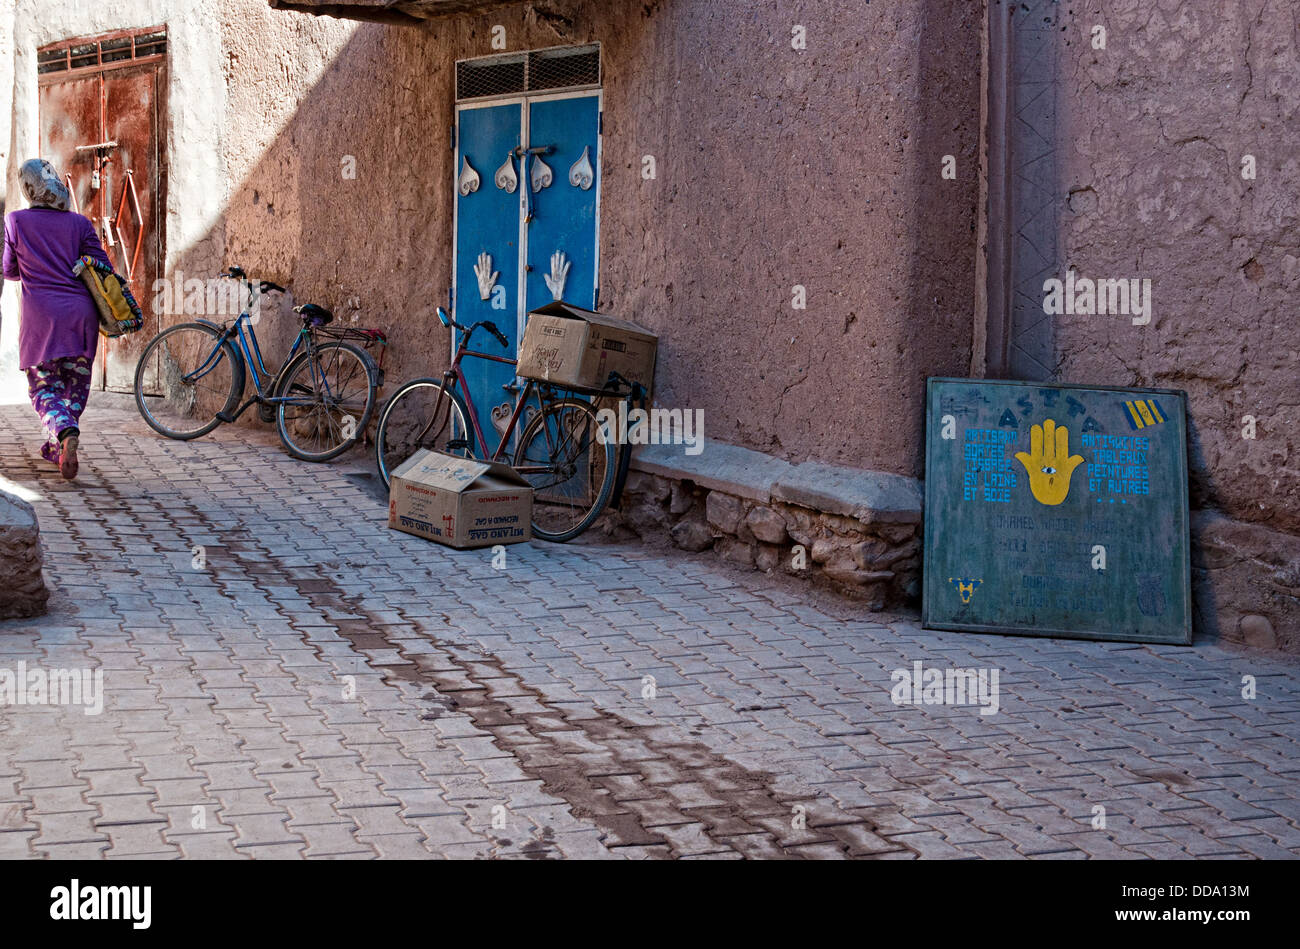 Les vélos garés contre une maison d'adobe dans le mellah (quartier juif), Ouarzazate, Maroc Banque D'Images